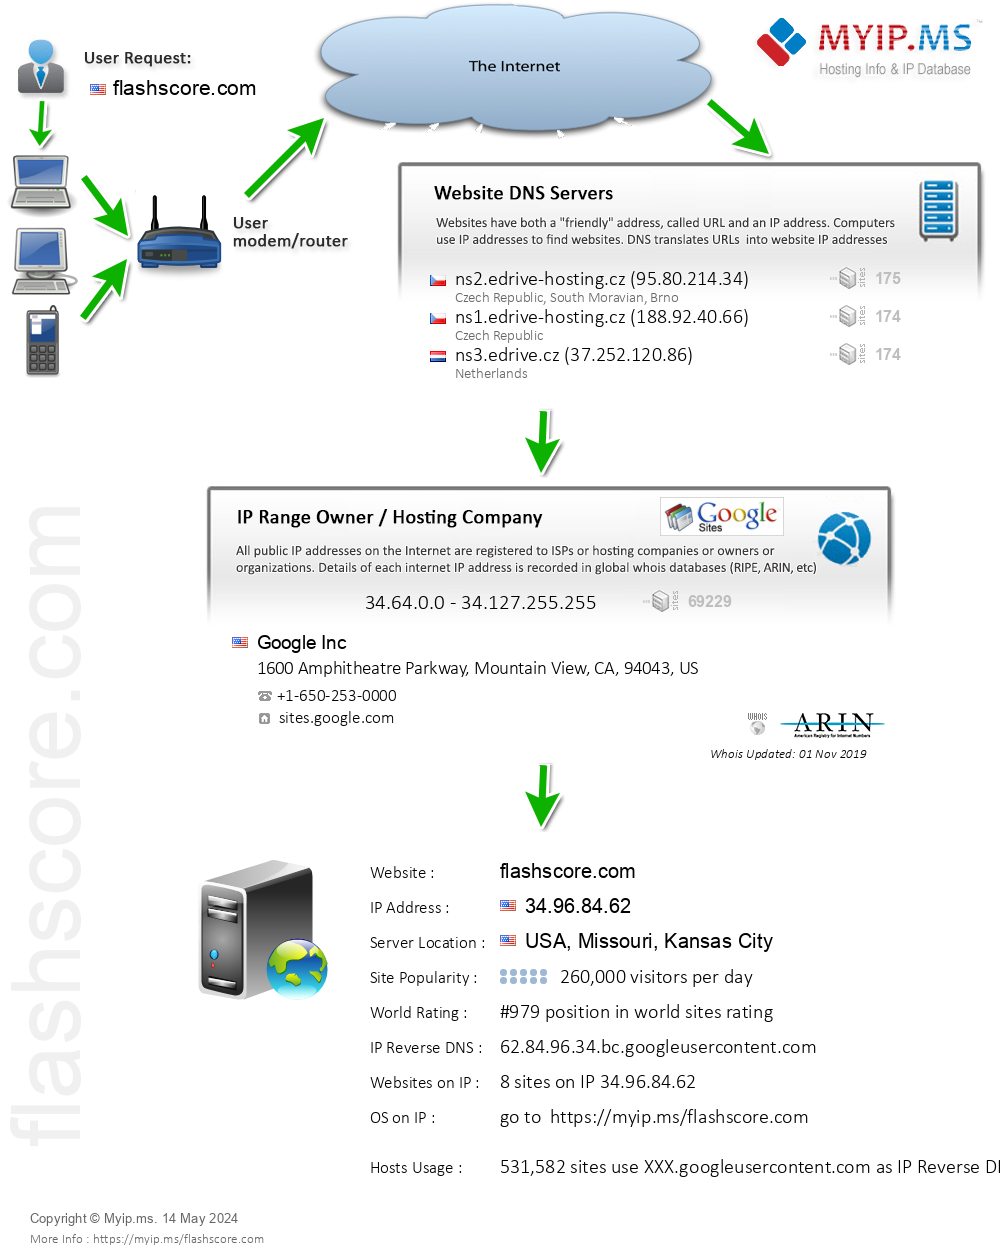 Flashscore.com - Website Hosting Visual IP Diagram